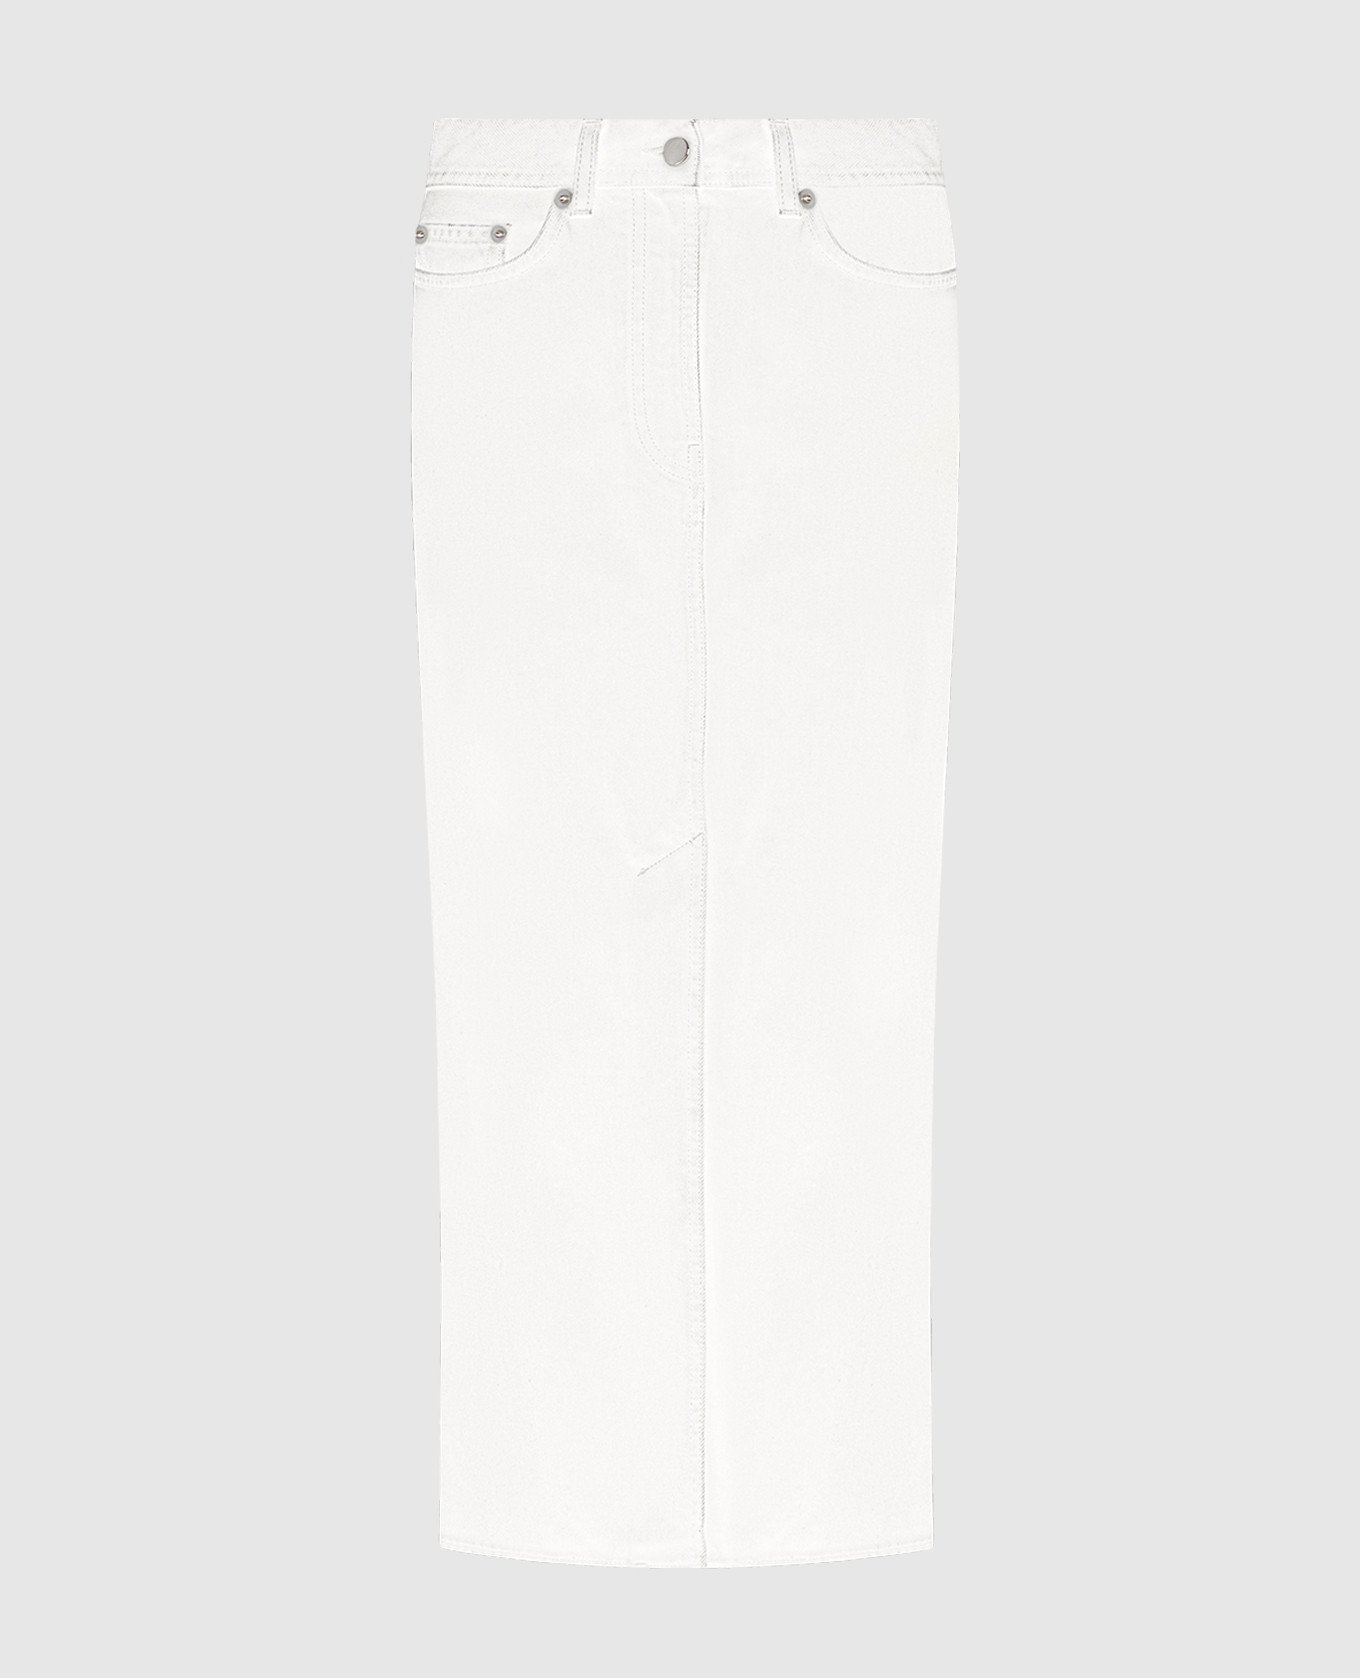 Белая джинсовая юбка миди Rona с логотипом патча.